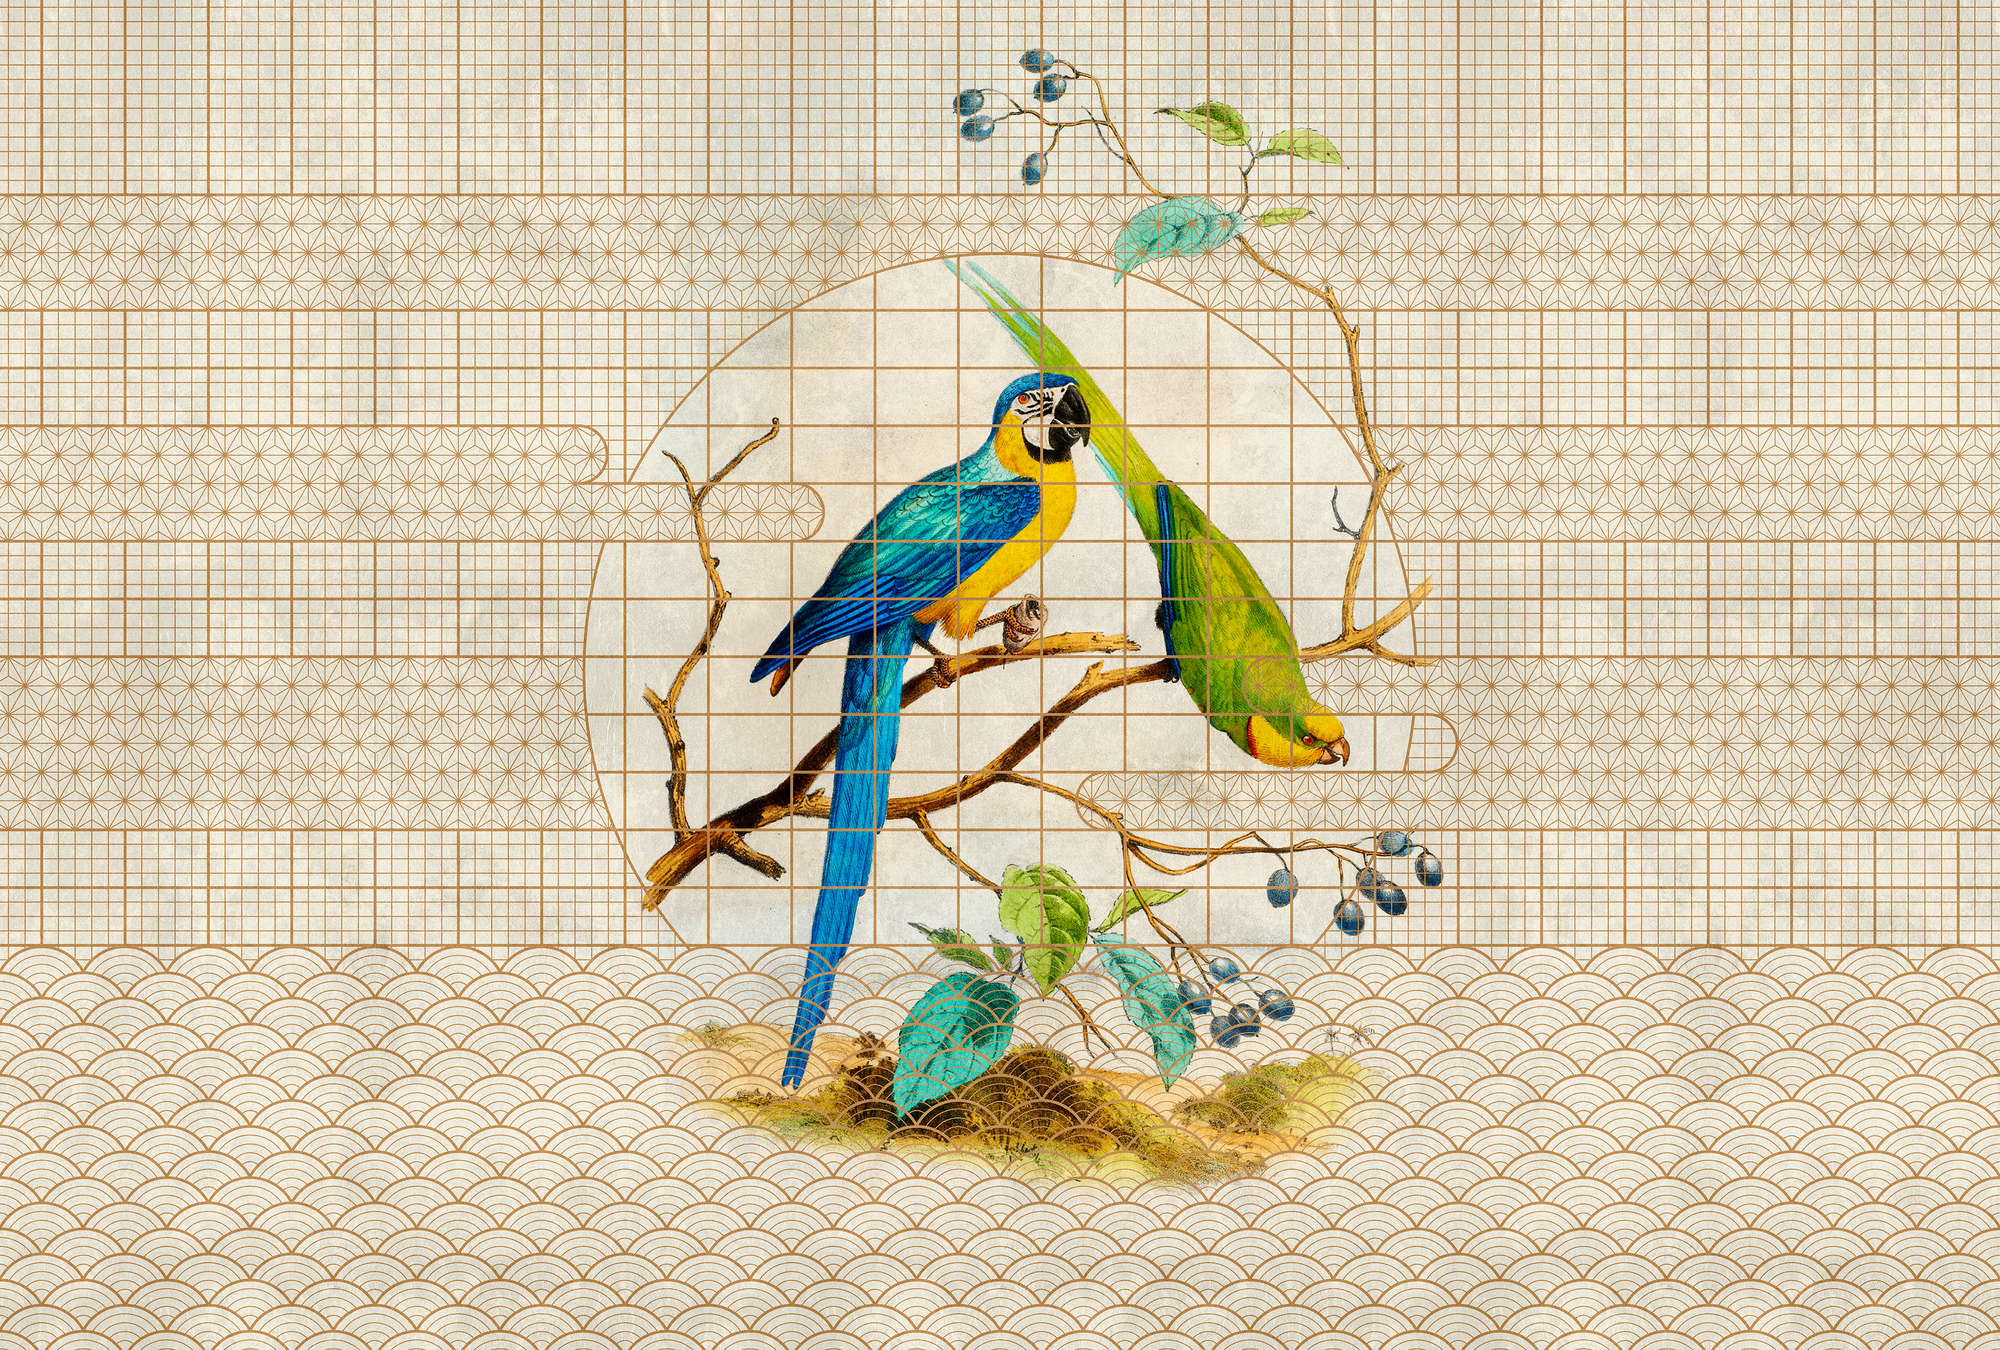             Aviary 3 - Carta da parati con motivi dorati e pappagalli in stile vintage
        